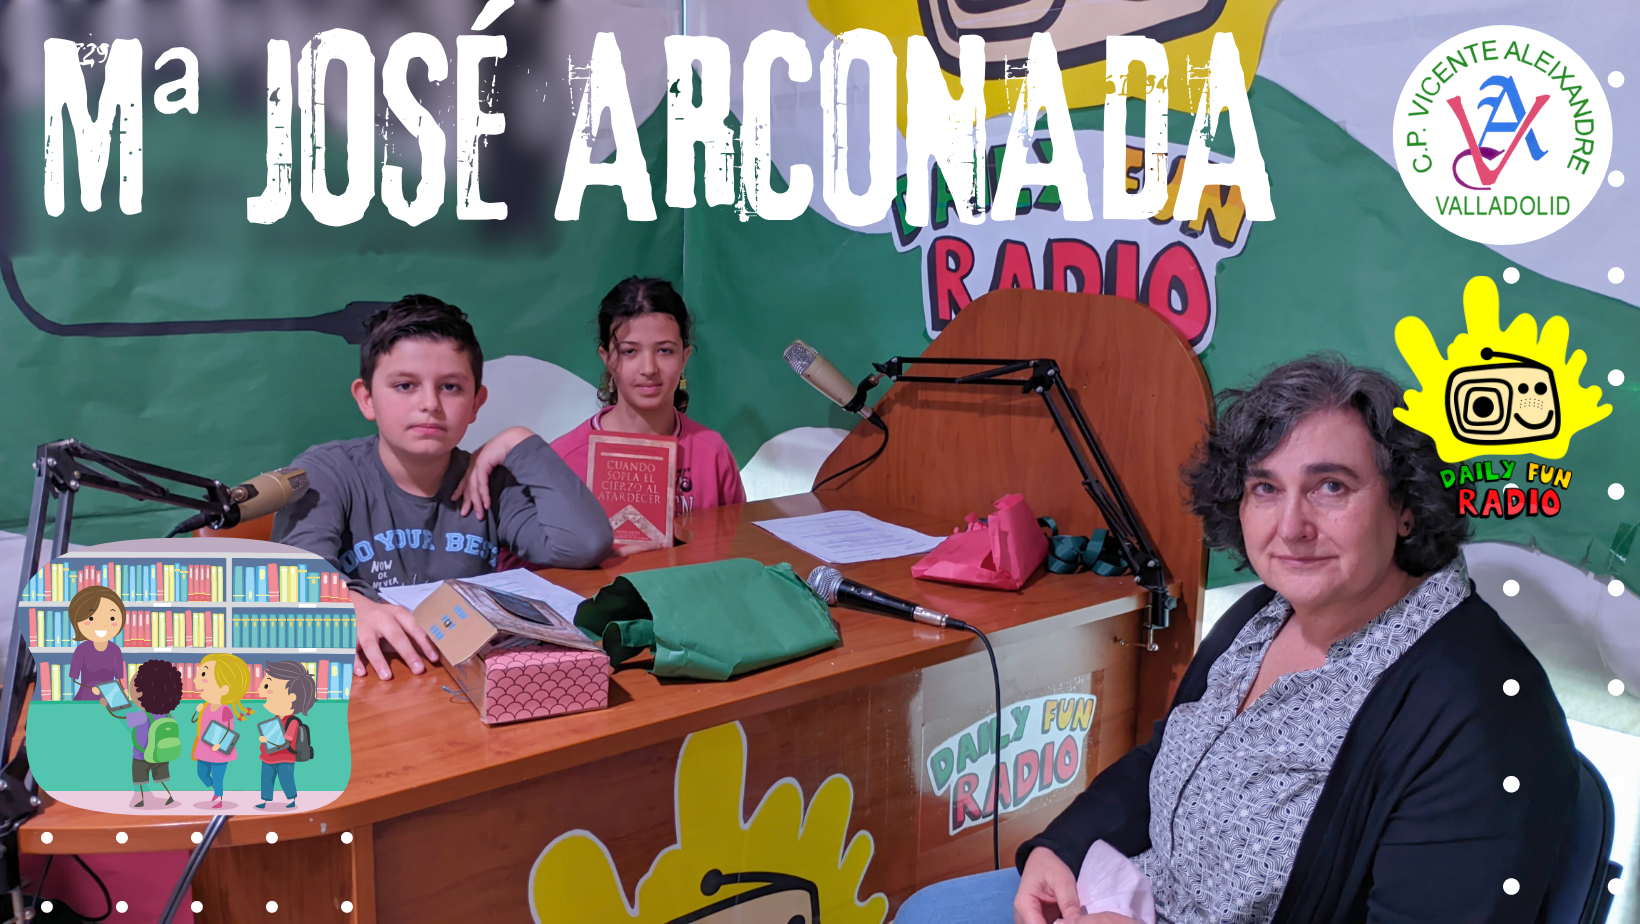 Daily Fun Radio Mª José Arconada